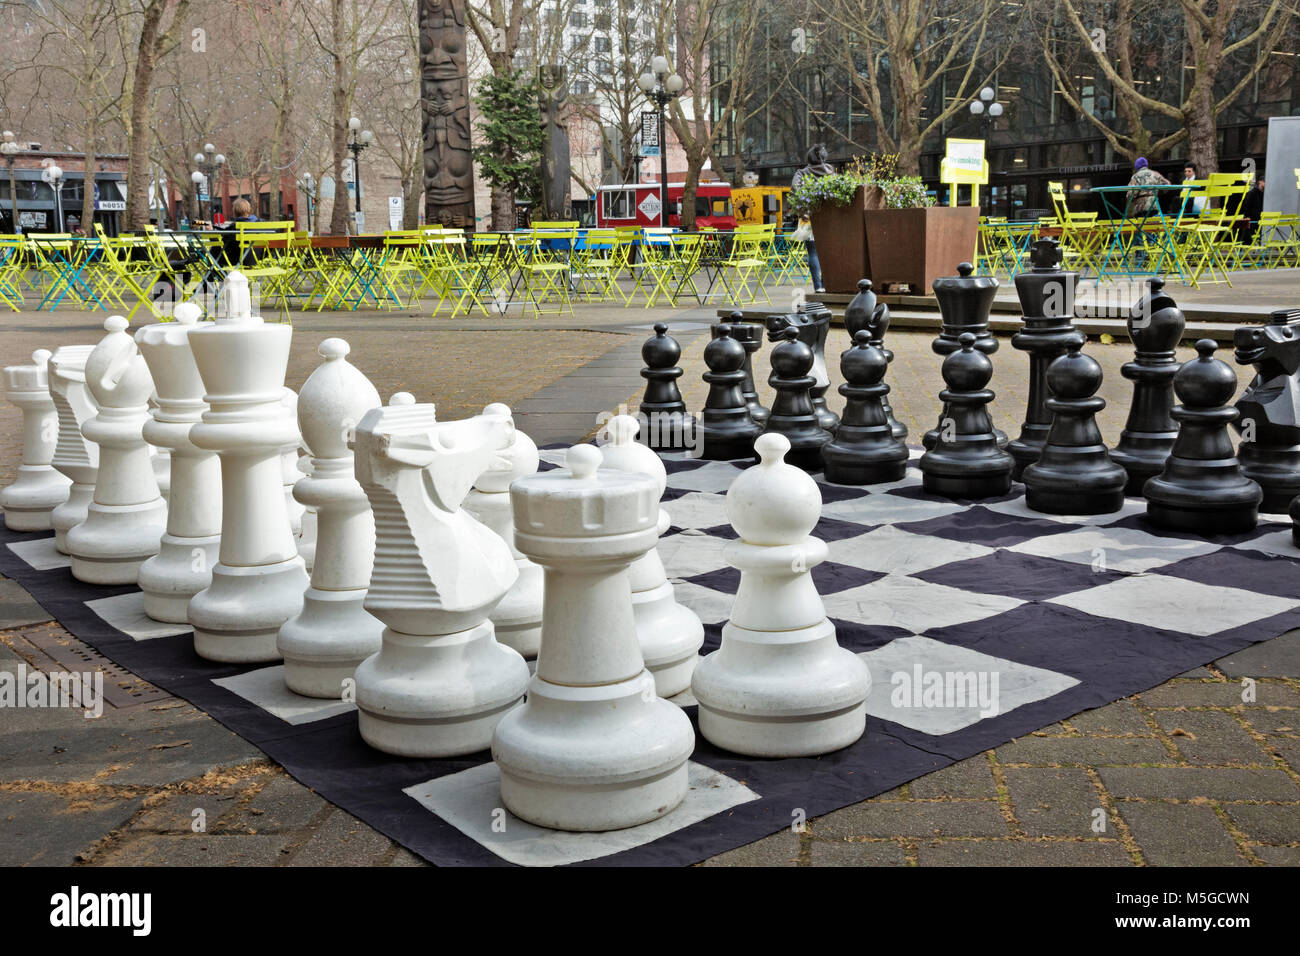 WA13665-00...WASHINGTON - grande set di scacchi all'aperto, tavoli, sedie, tavoli da ping pong e giochi di foosball per un luogo divertente. 2017 Foto Stock